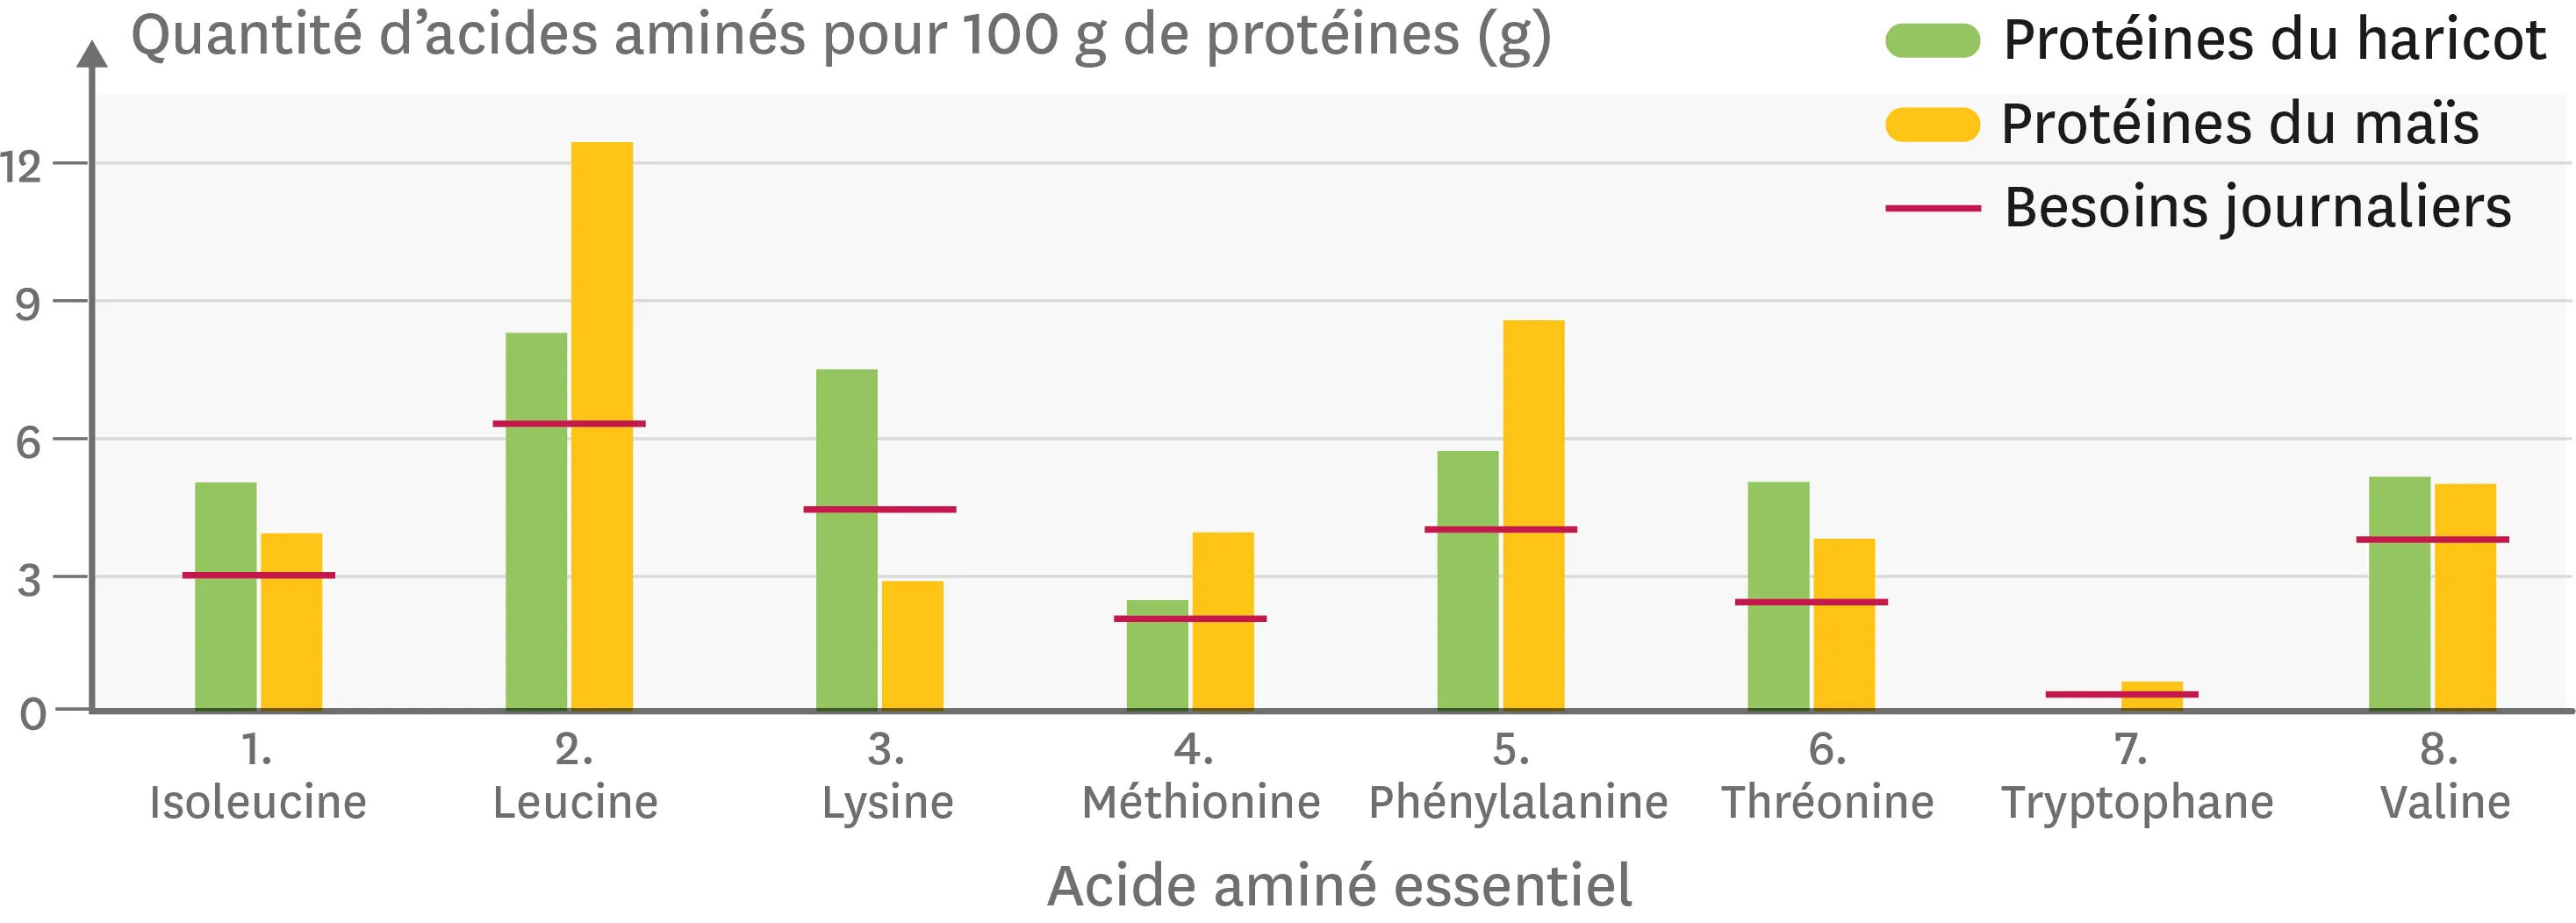 Graphique représentant la quantité des huit acides aminés essentiels dans le haricot et le maïs.